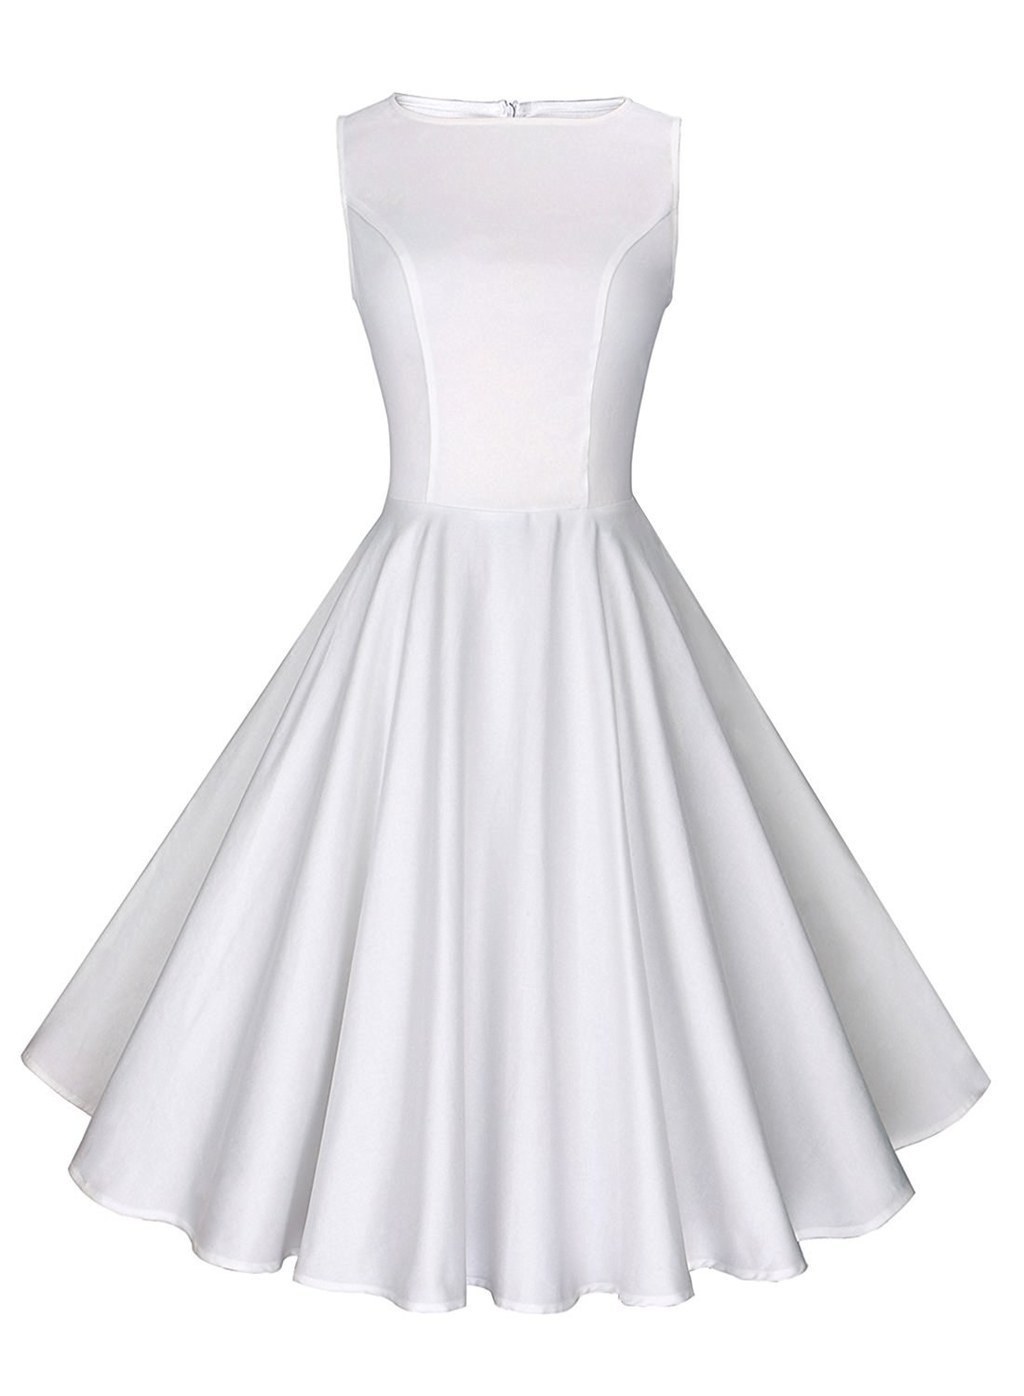 white dress amazon